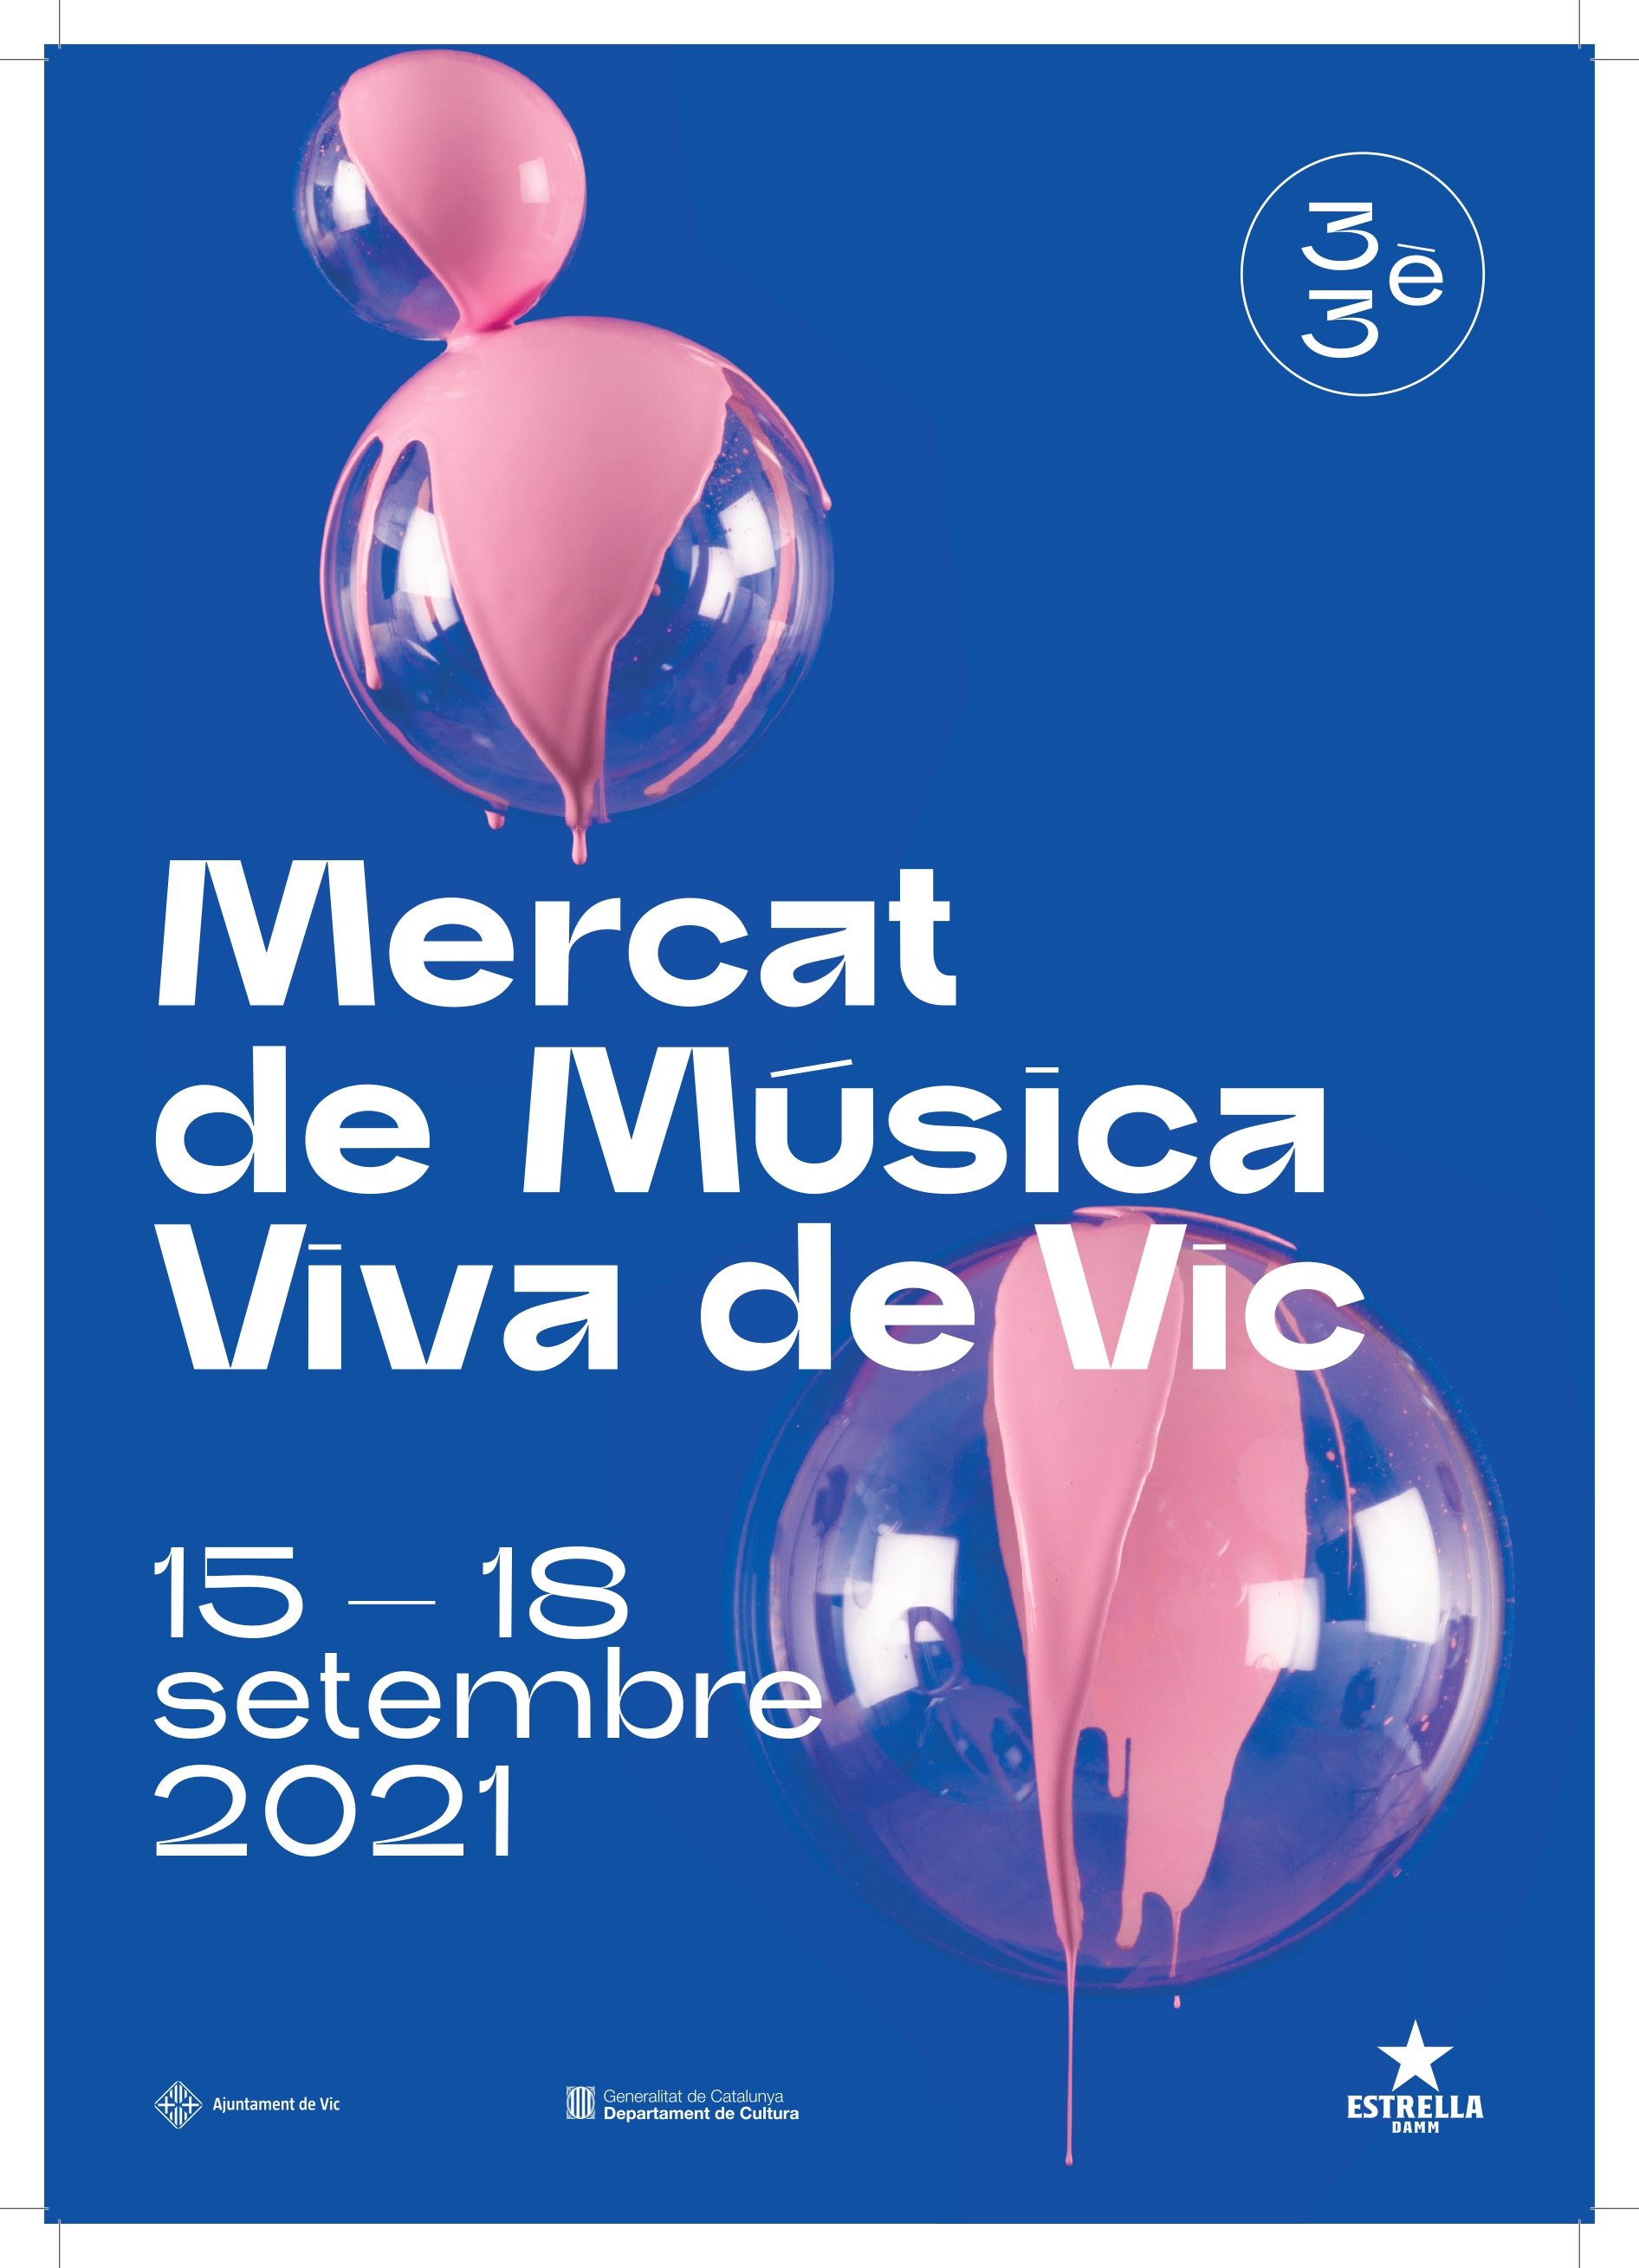 MERCAT DE MÚSICA VIVA DE VIC 2021